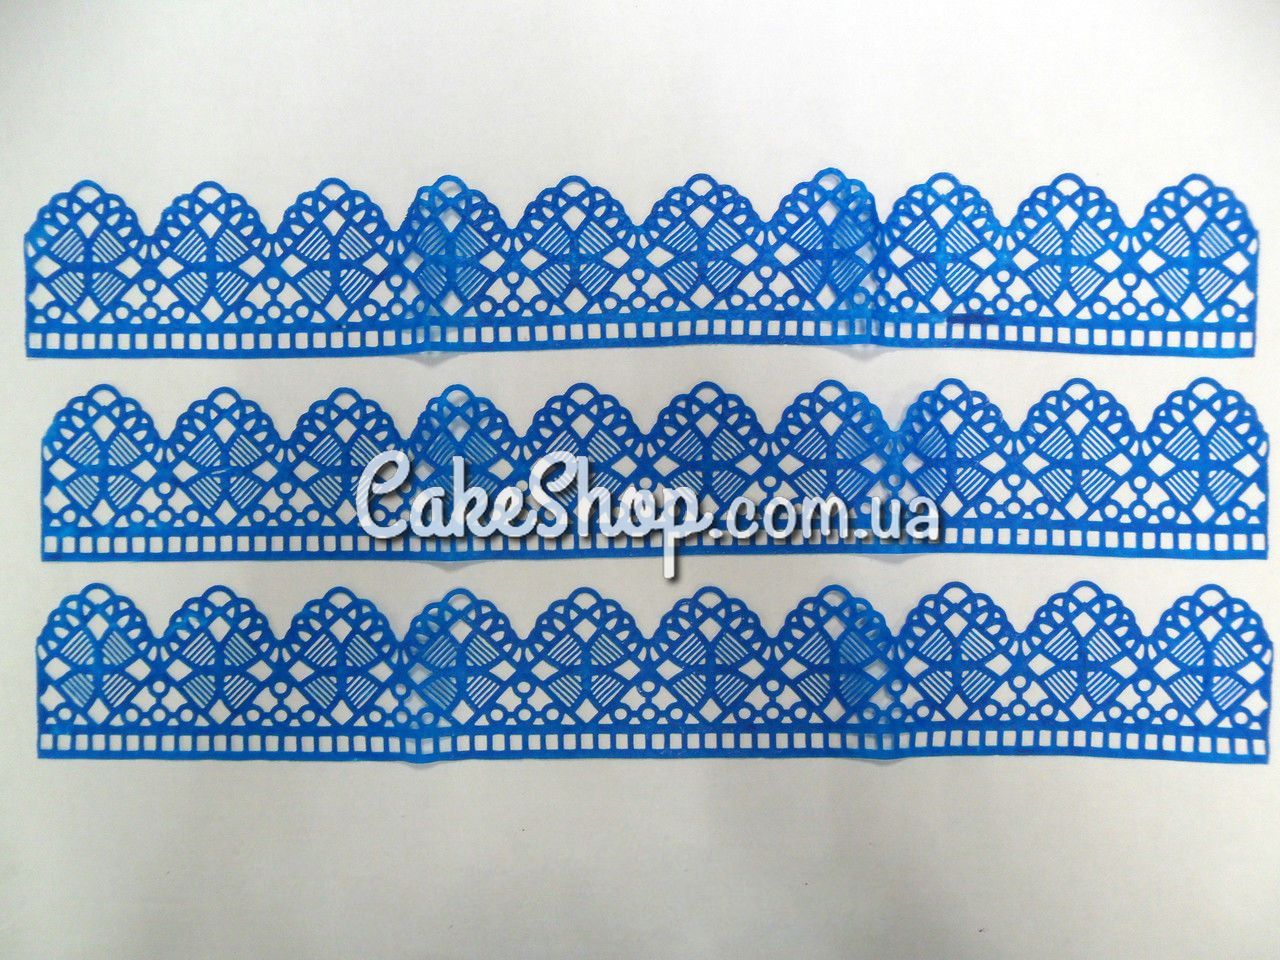 ⋗ Кружево из айсинга №6 Синее купить в Украине ➛ CakeShop.com.ua, фото